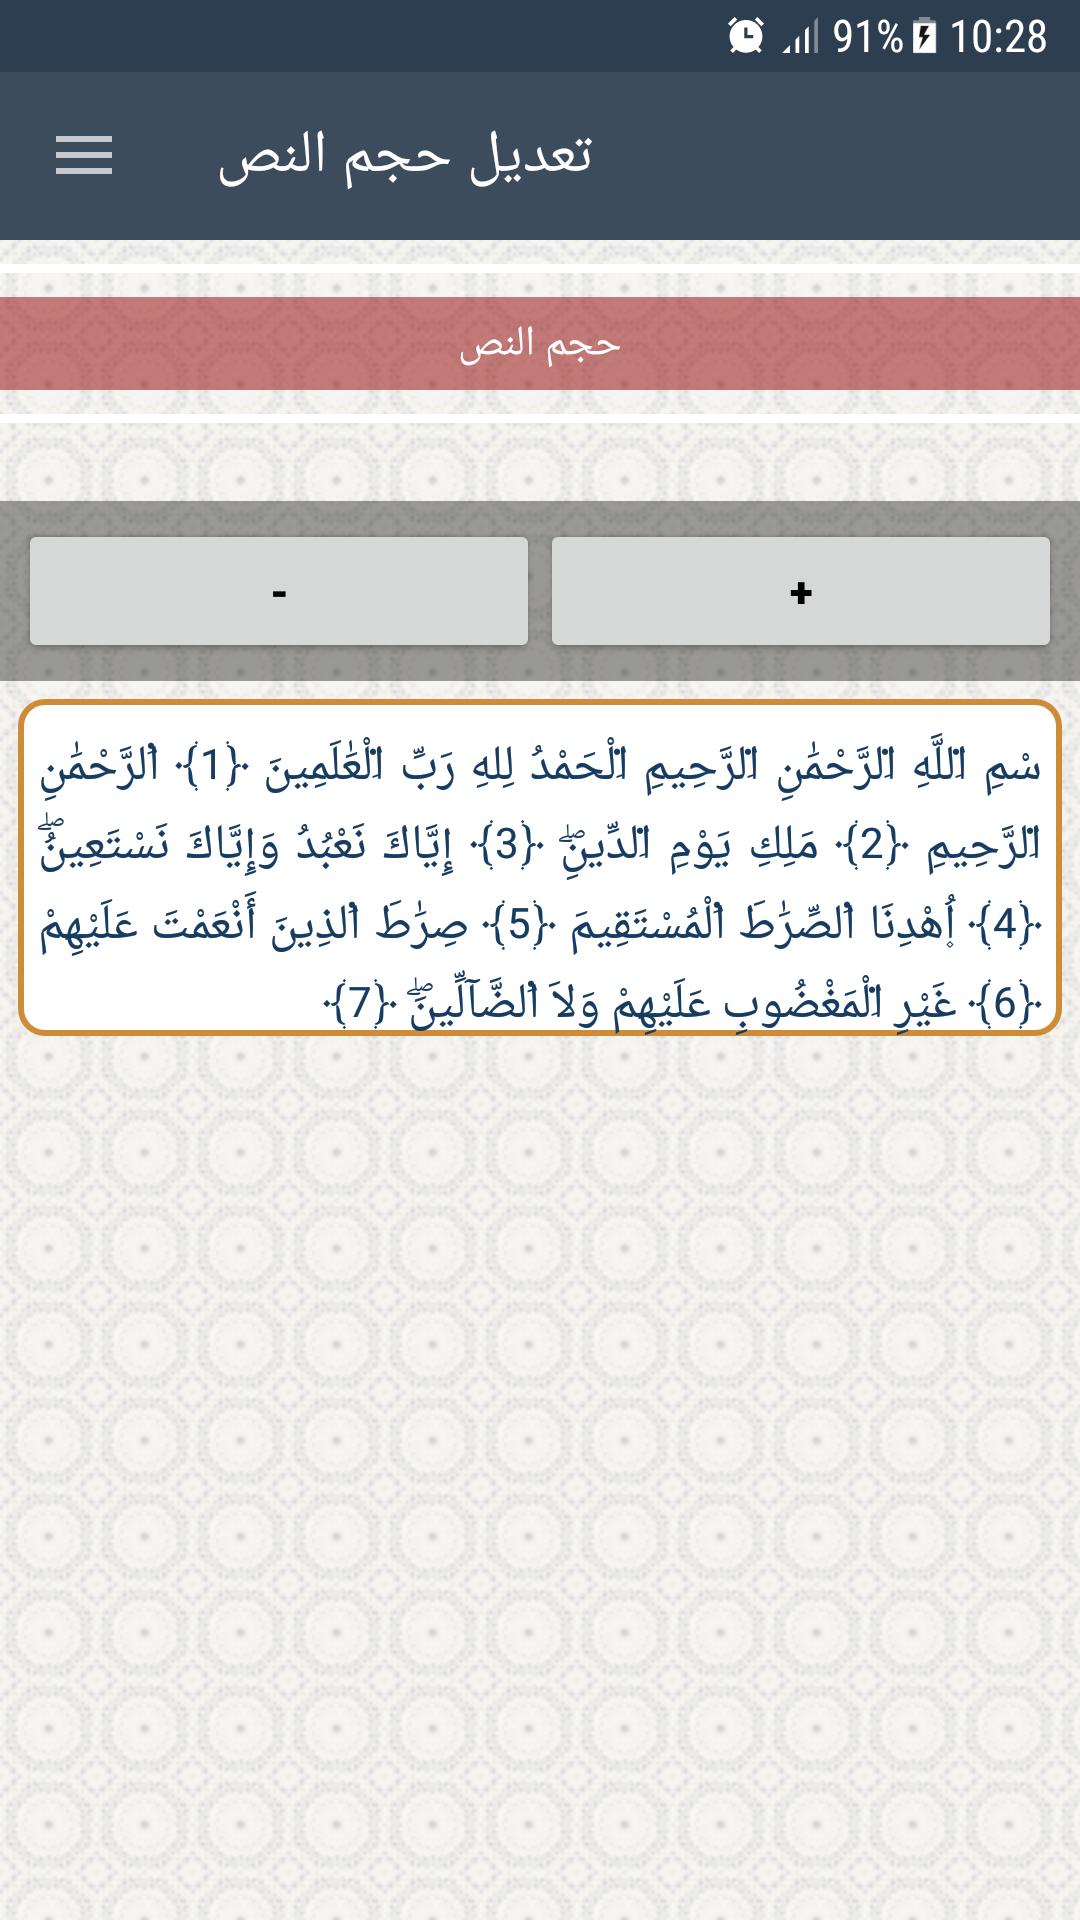 القرآن الكريم - ورش 1.0 Screenshot 5